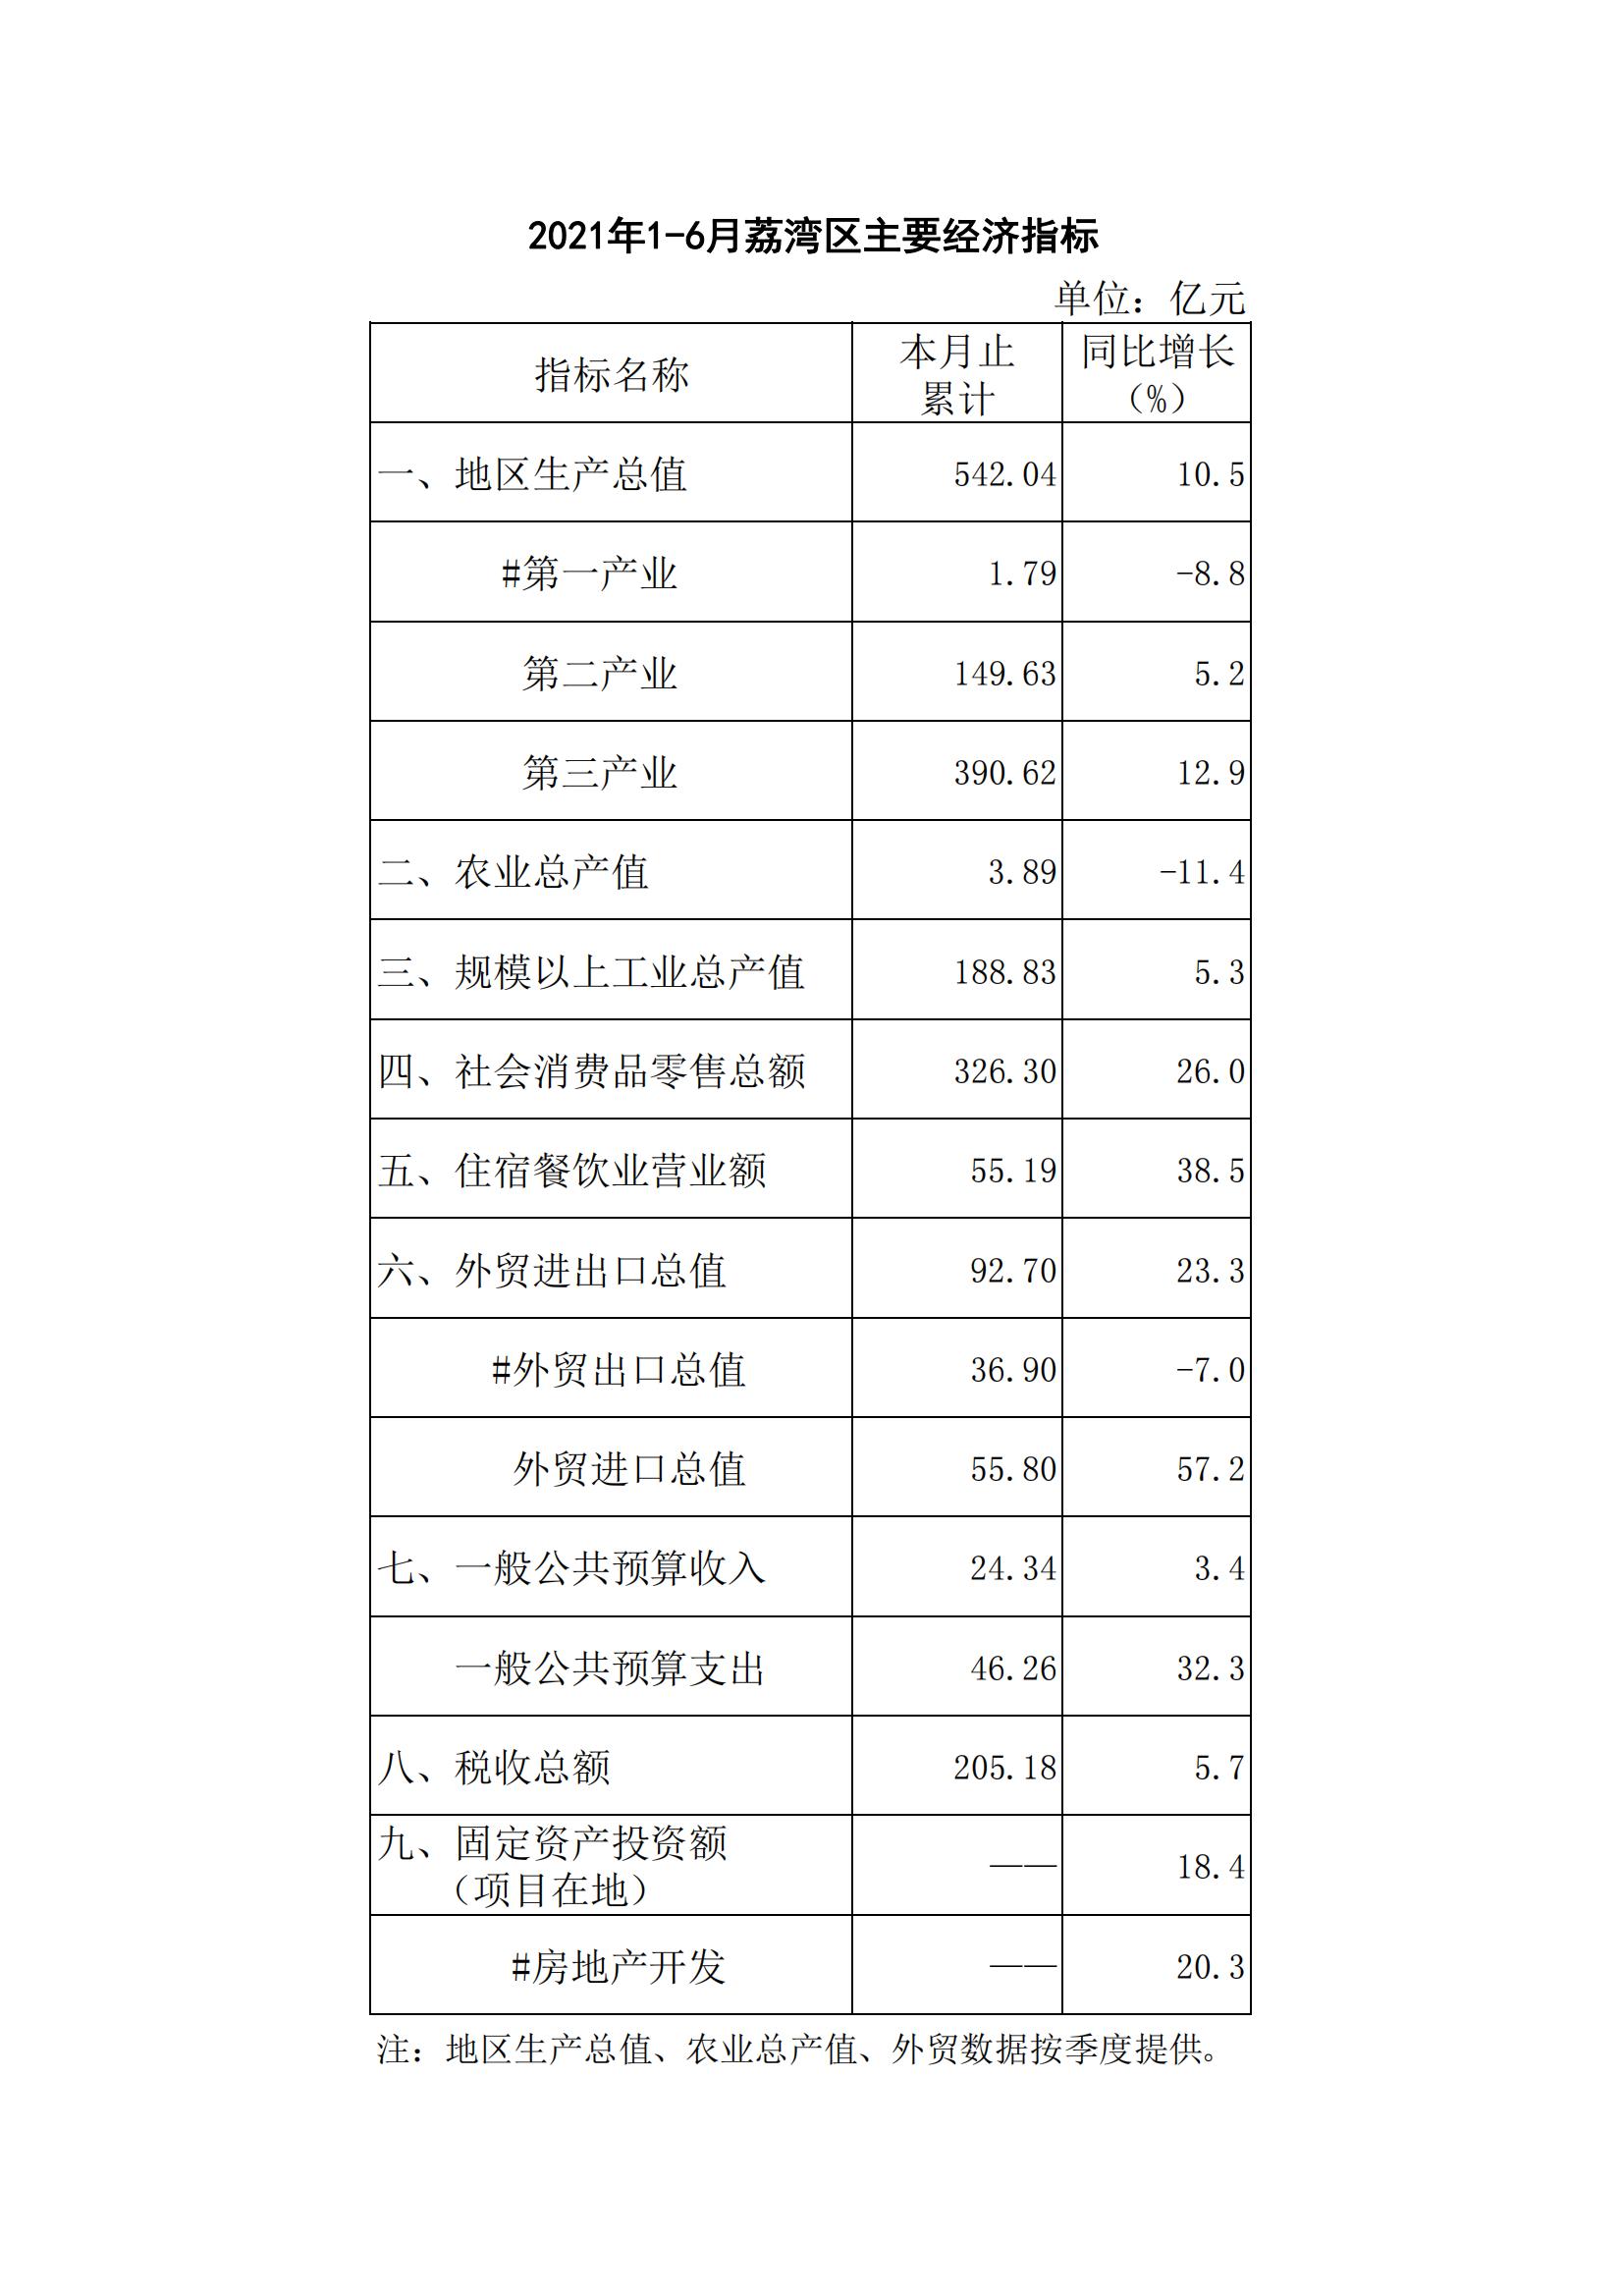 【各区数据】2021年1-6月荔湾区主要经济指标_00.jpg